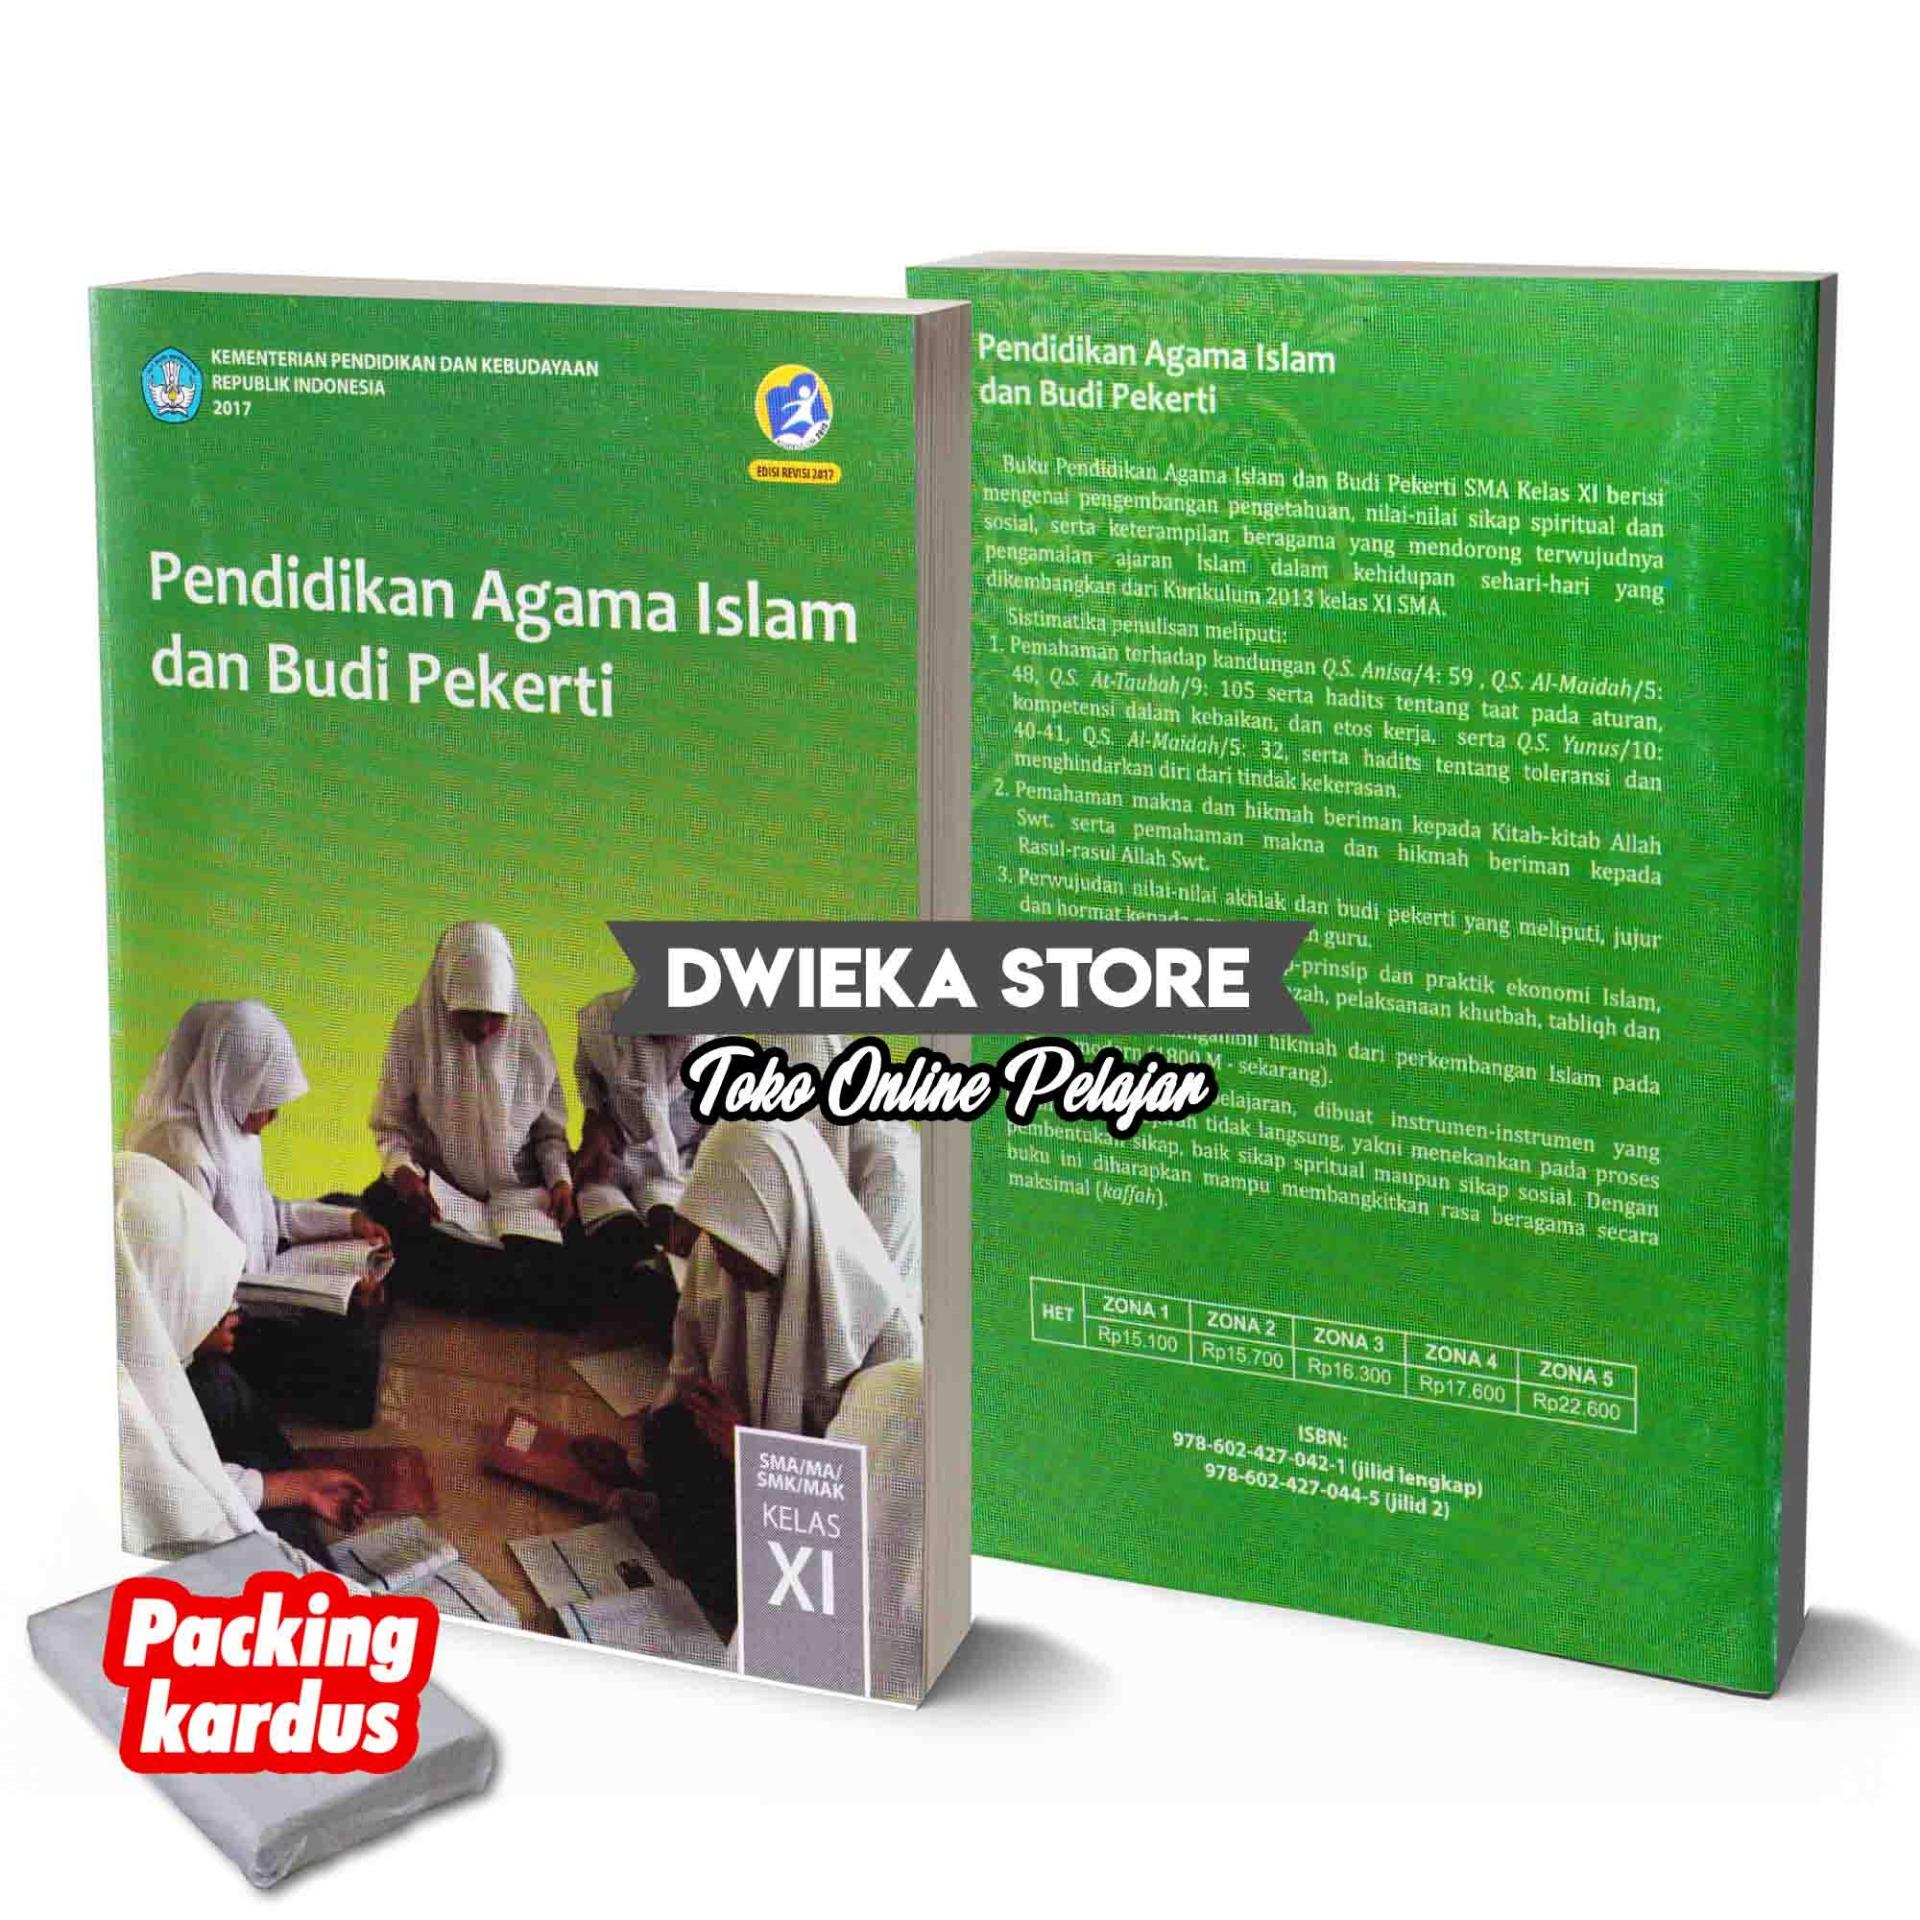 Pendidikan Agama Islam dan Budi Pekerti Kelas 11